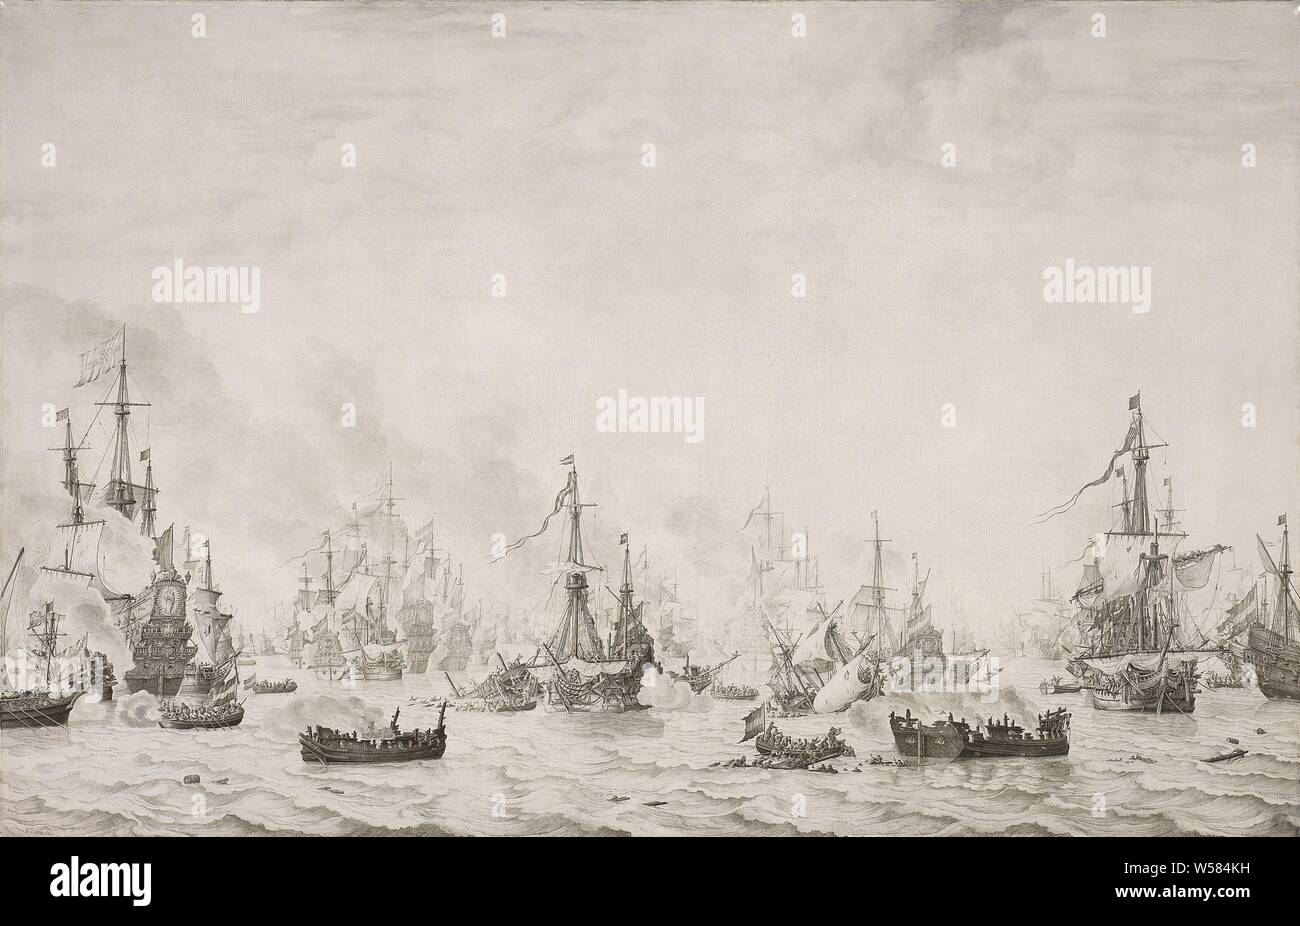 La bataille de la valeur de la bataille des Downs contre l'Armada espagnole, 21 octobre 1639, la bataille navale contre l'Armada espagnole au Duins, 21 octobre 1639. Les navires néerlandais et espagnols, avec certains brûleurs dans l'avant-plan et de sloops avec les marins, bataille (navires à voile), voile de bateau, bateau à voile, bataille de la Downs, Duins, Cornelis Tromp, Willem van de Velde (J), 1659, toile, encre, h 124 cm × w 190 cm Banque D'Images